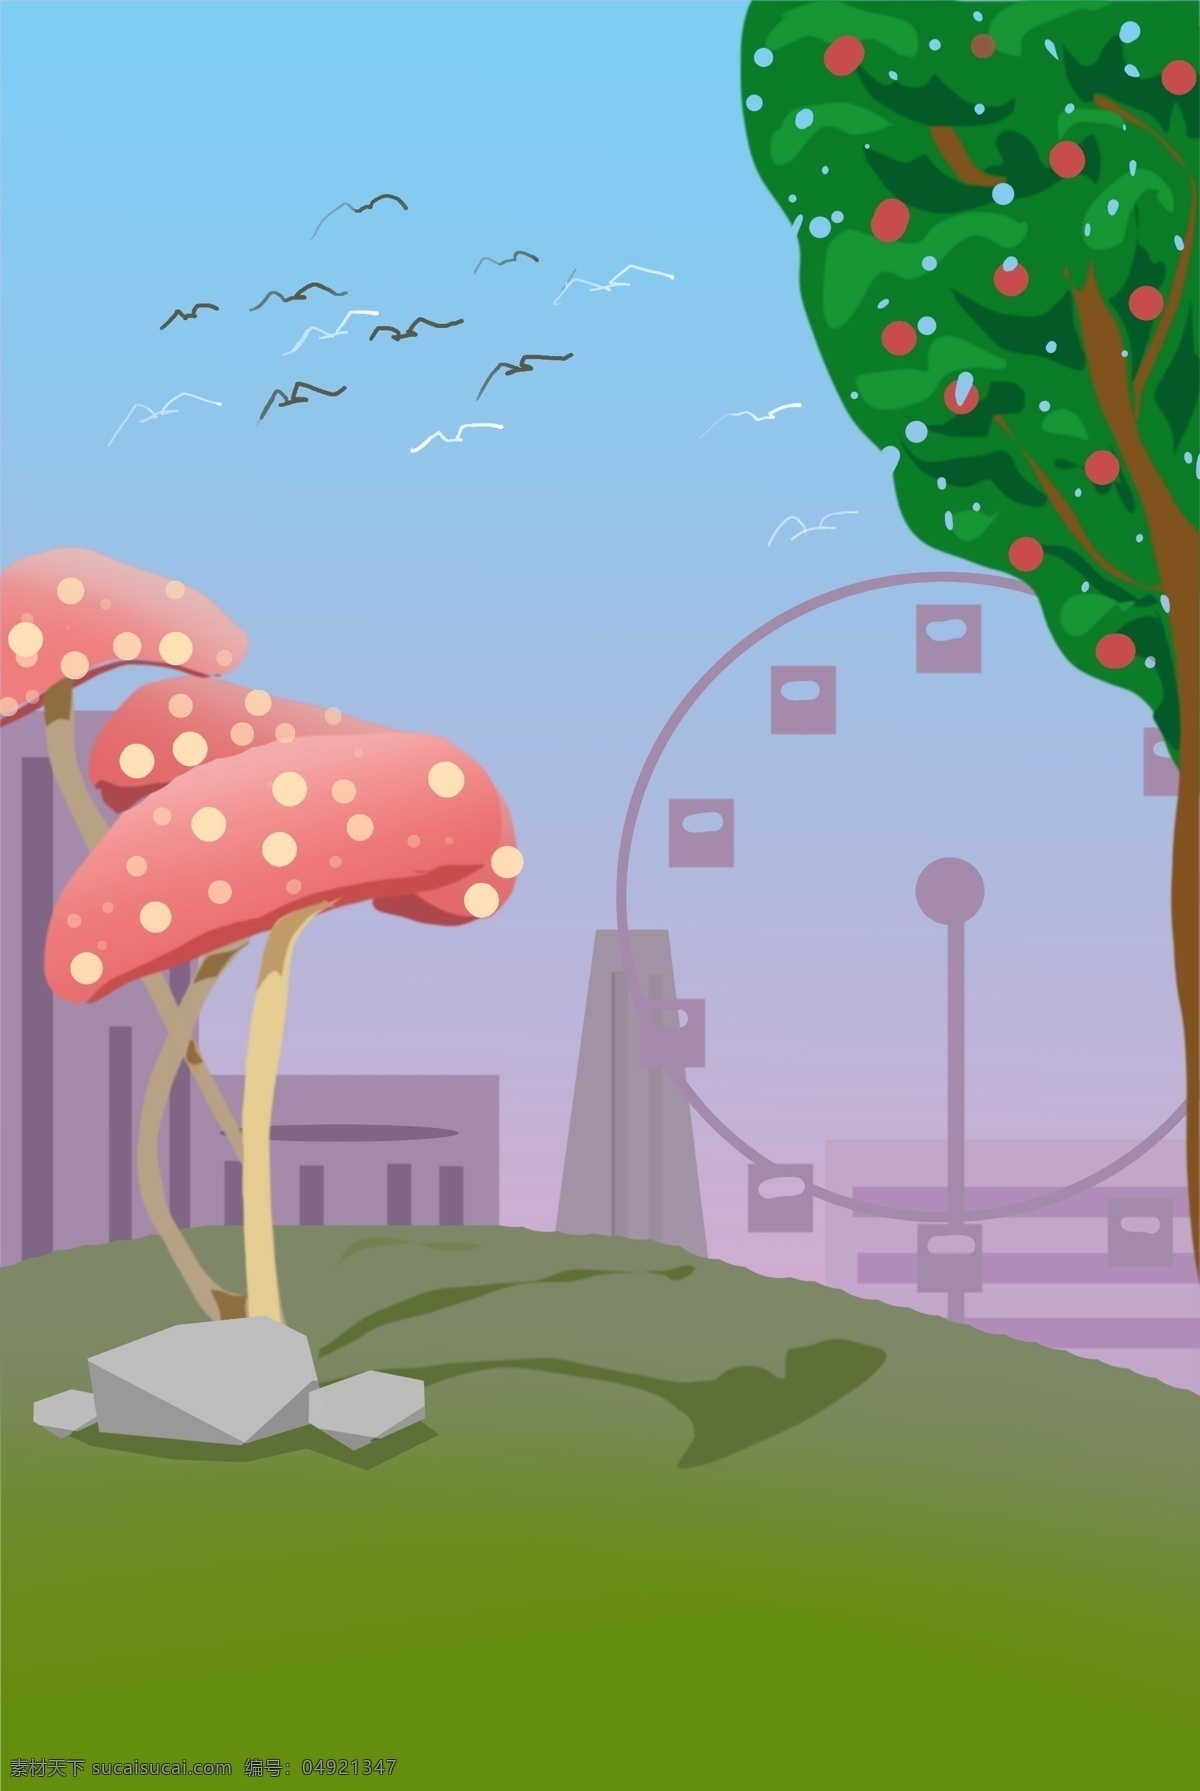 儿童节 游乐园 摩天轮 卡通 背景 彩色 蘑菇树 苹果树 幼儿园 游乐场